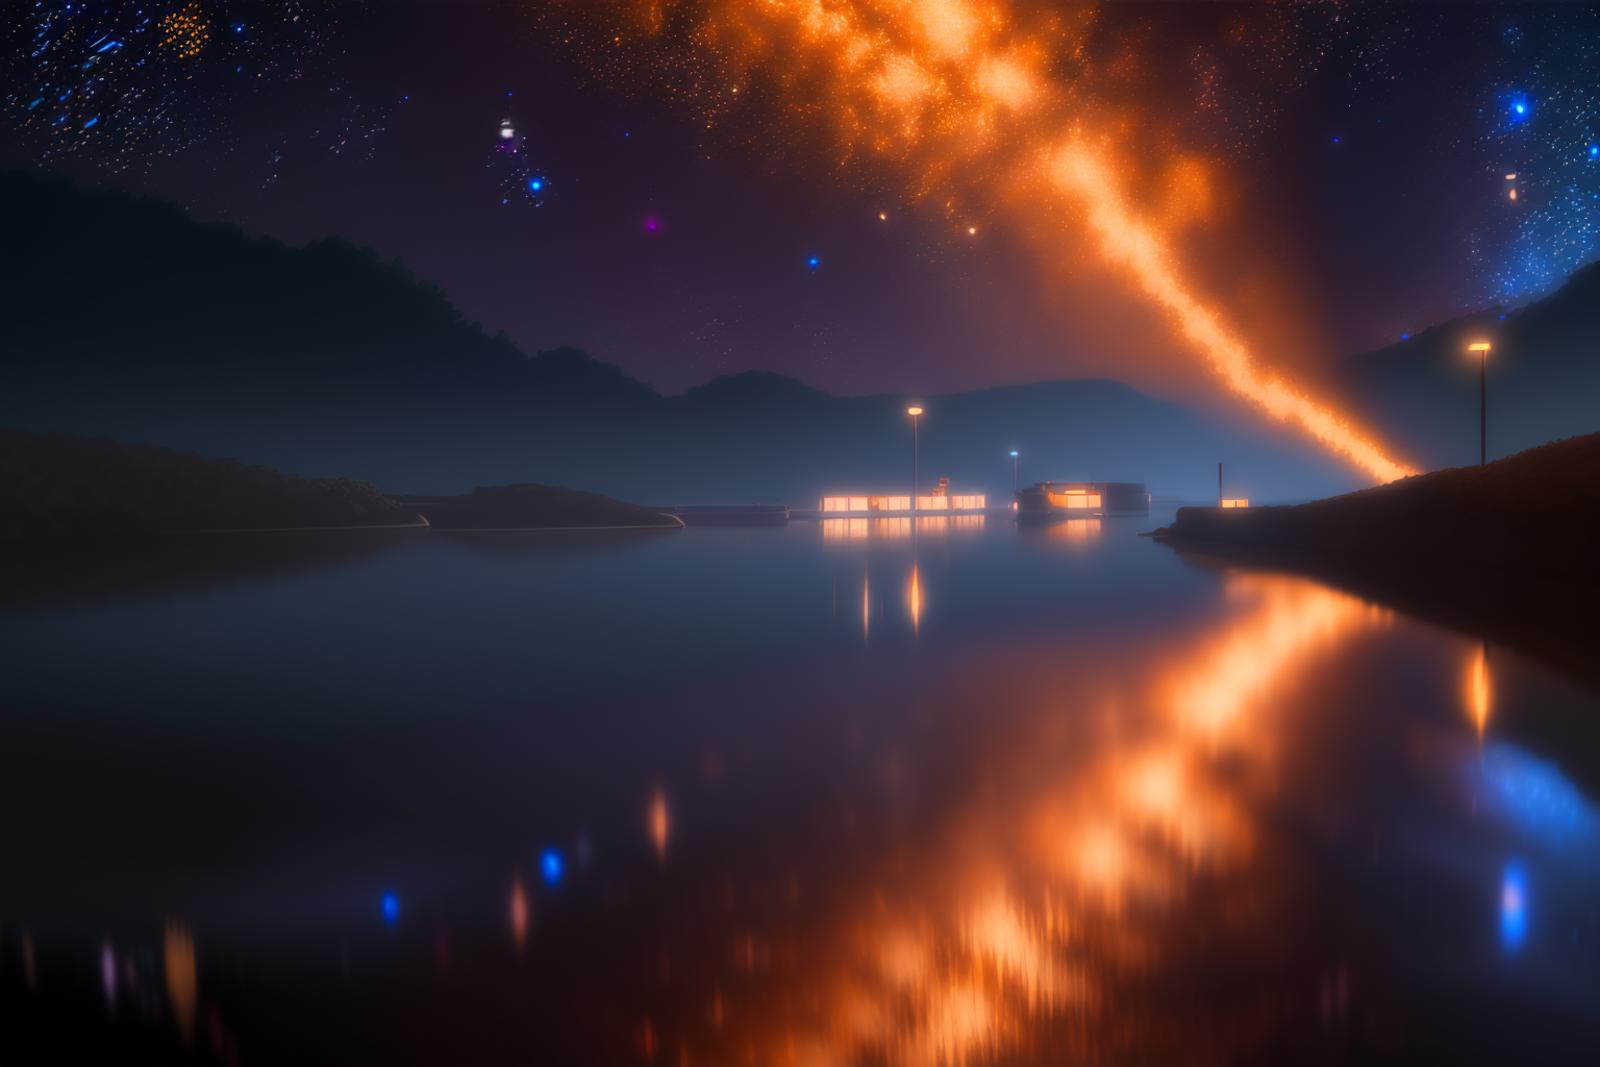 银河_the Milky Way_天の川 image by TanedaRisa